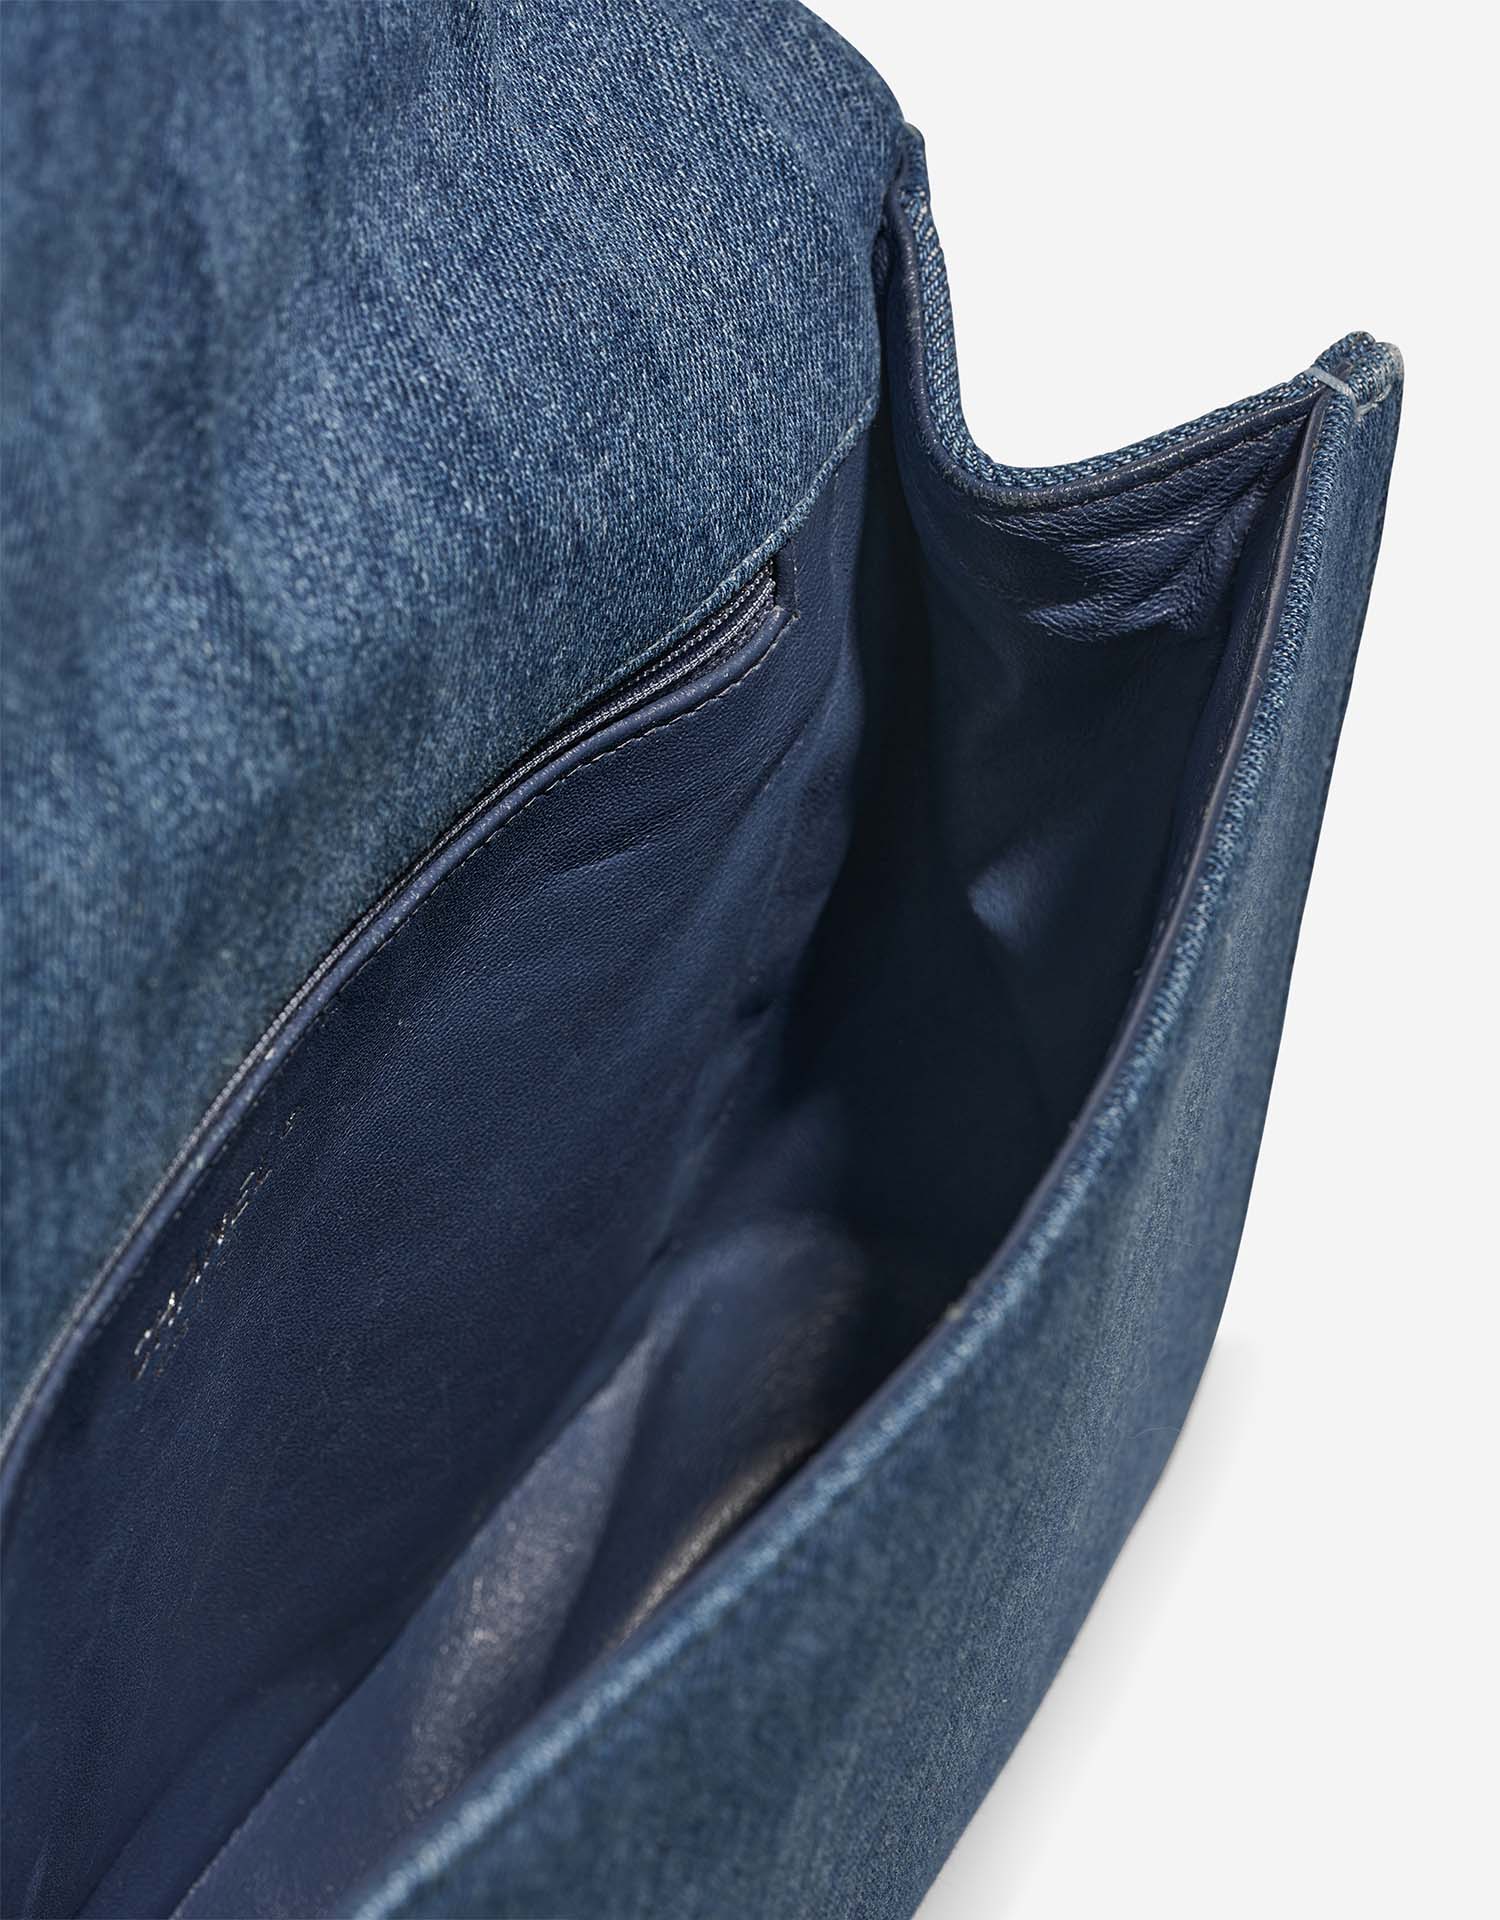 Chanel Boy Large Blue Inside  | Sell your designer bag on Saclab.com